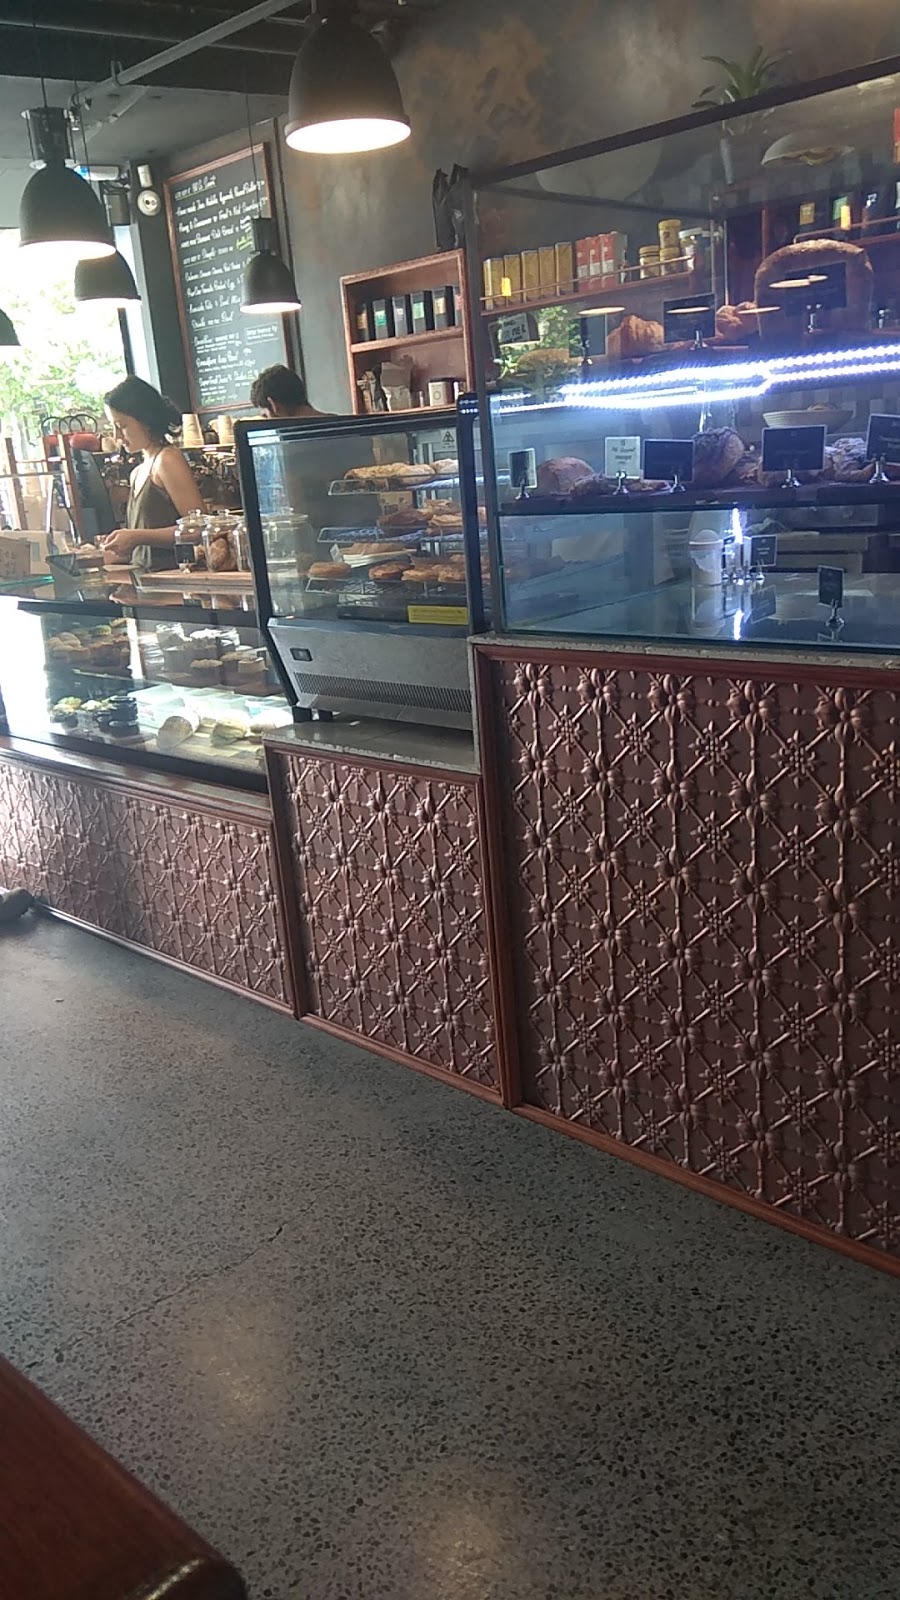 Little fern and co - breadfern organic bakery | cafe | Redfern NSW 2016, Australia